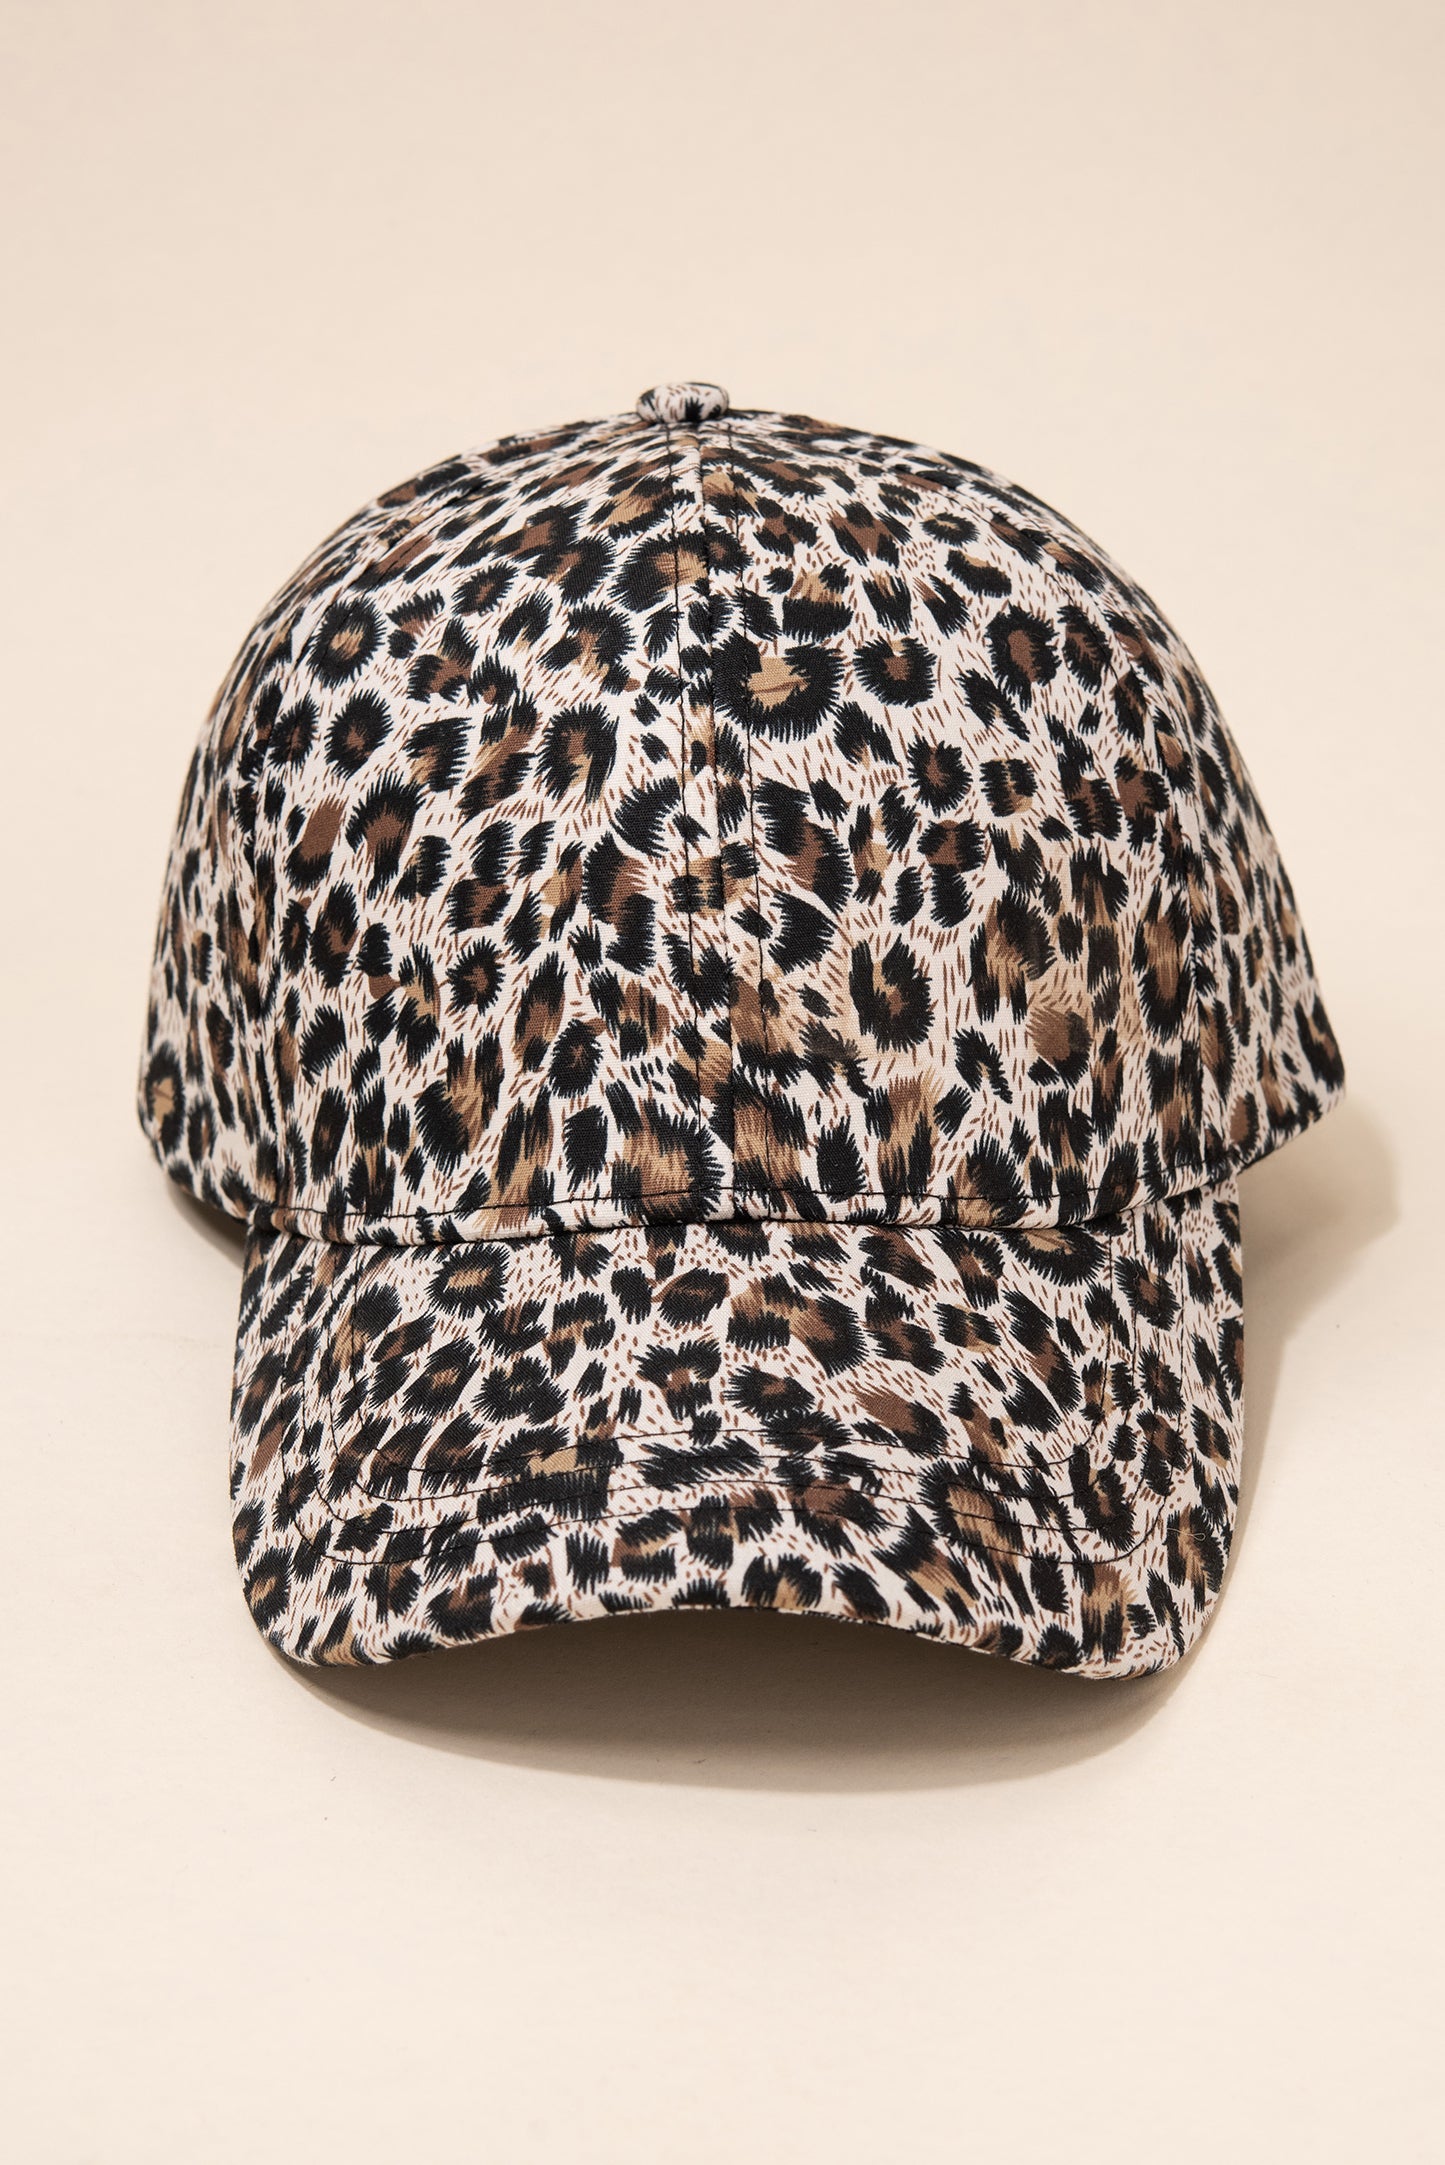 Classic Leopard Casual Cap